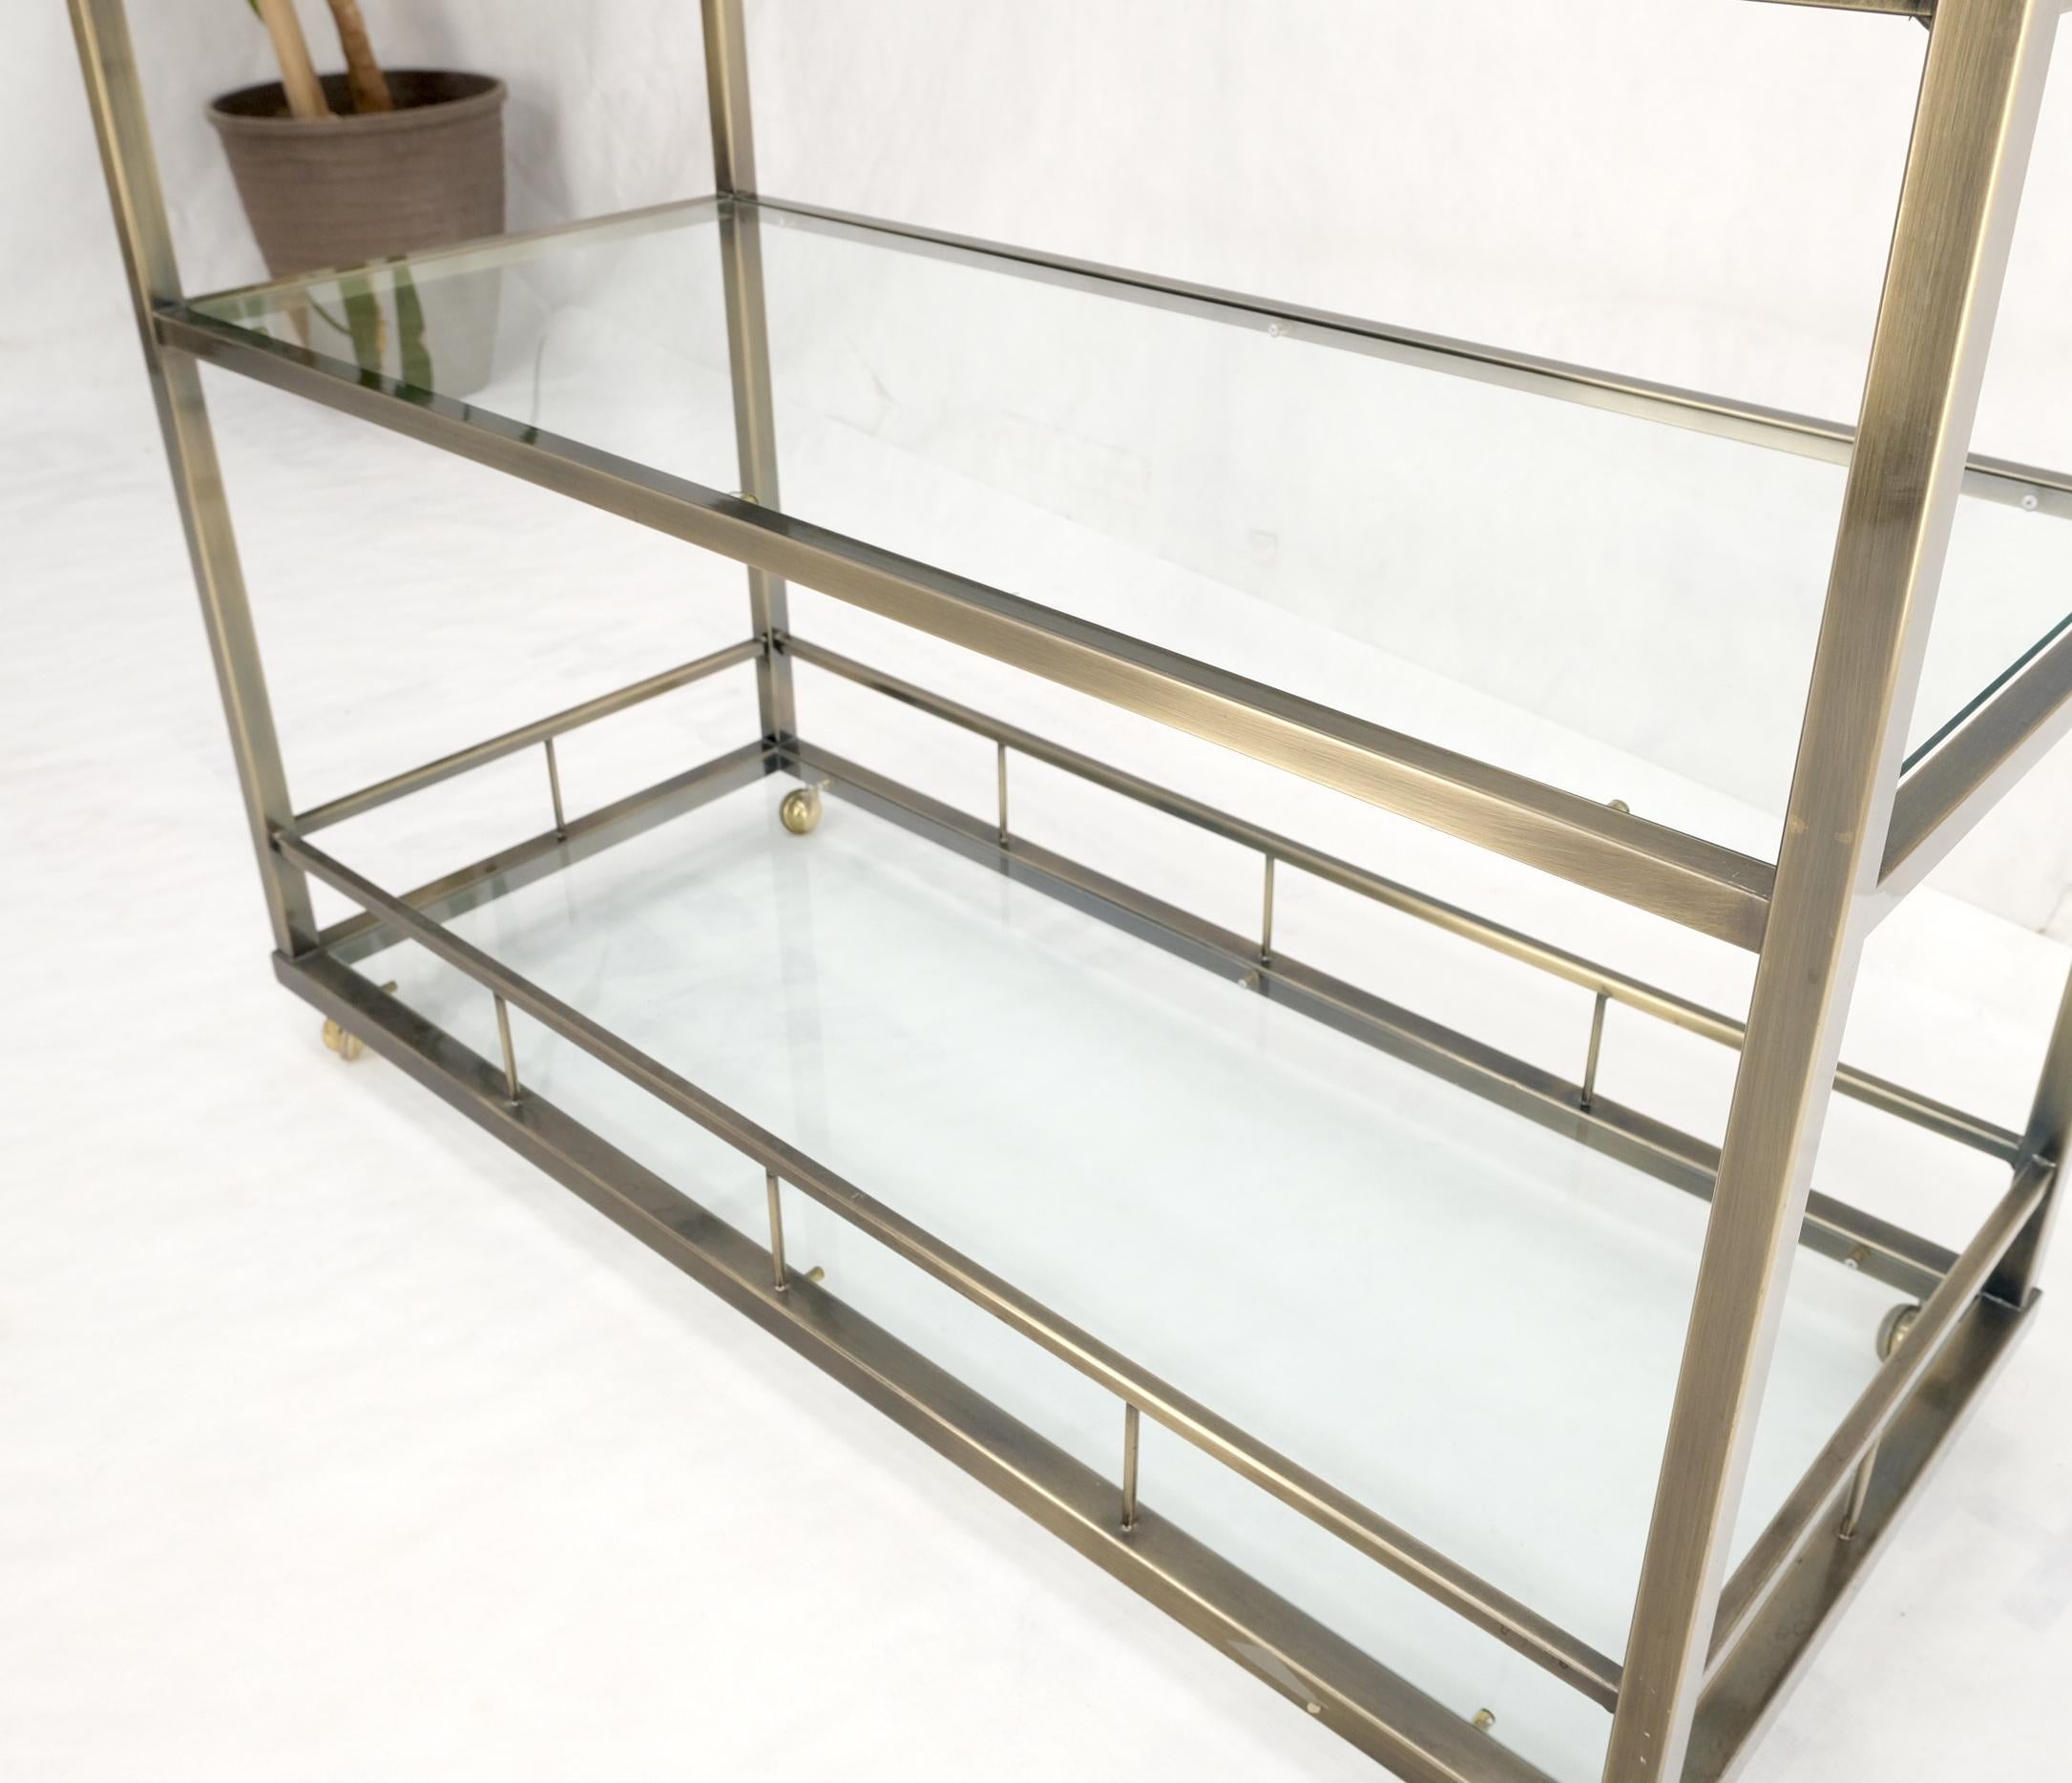 Brass Finish Glass Shelves 3 Tier Serving Bar Serving Cart W/ Gallery Mint! 5